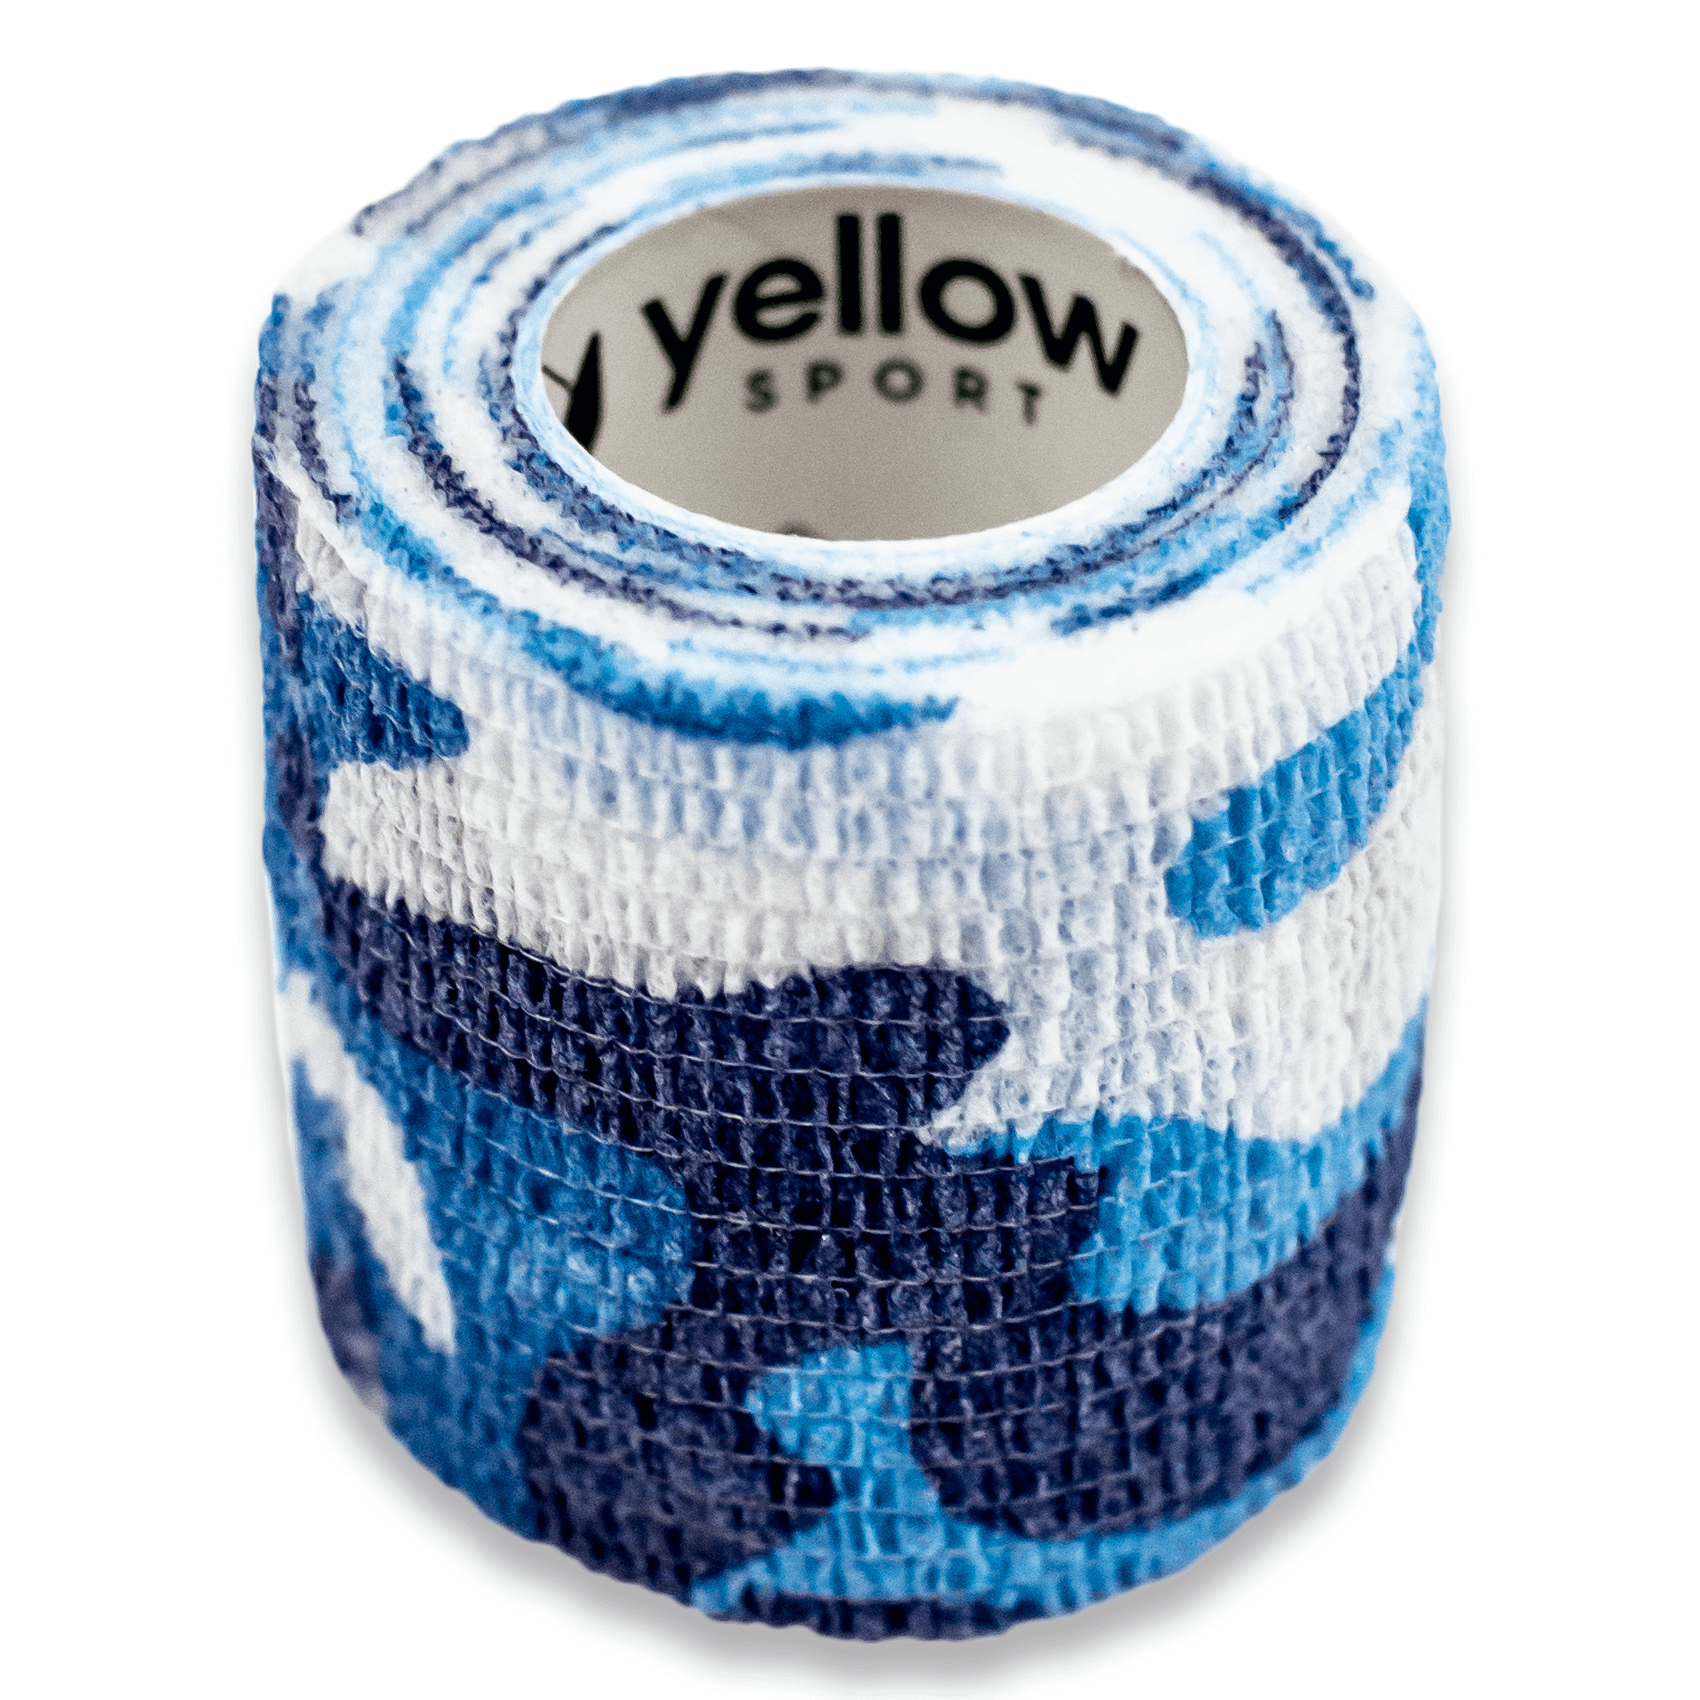 yellowBAND bandaż kohezyjny, 5cm x 4,5m, Niebieski moro